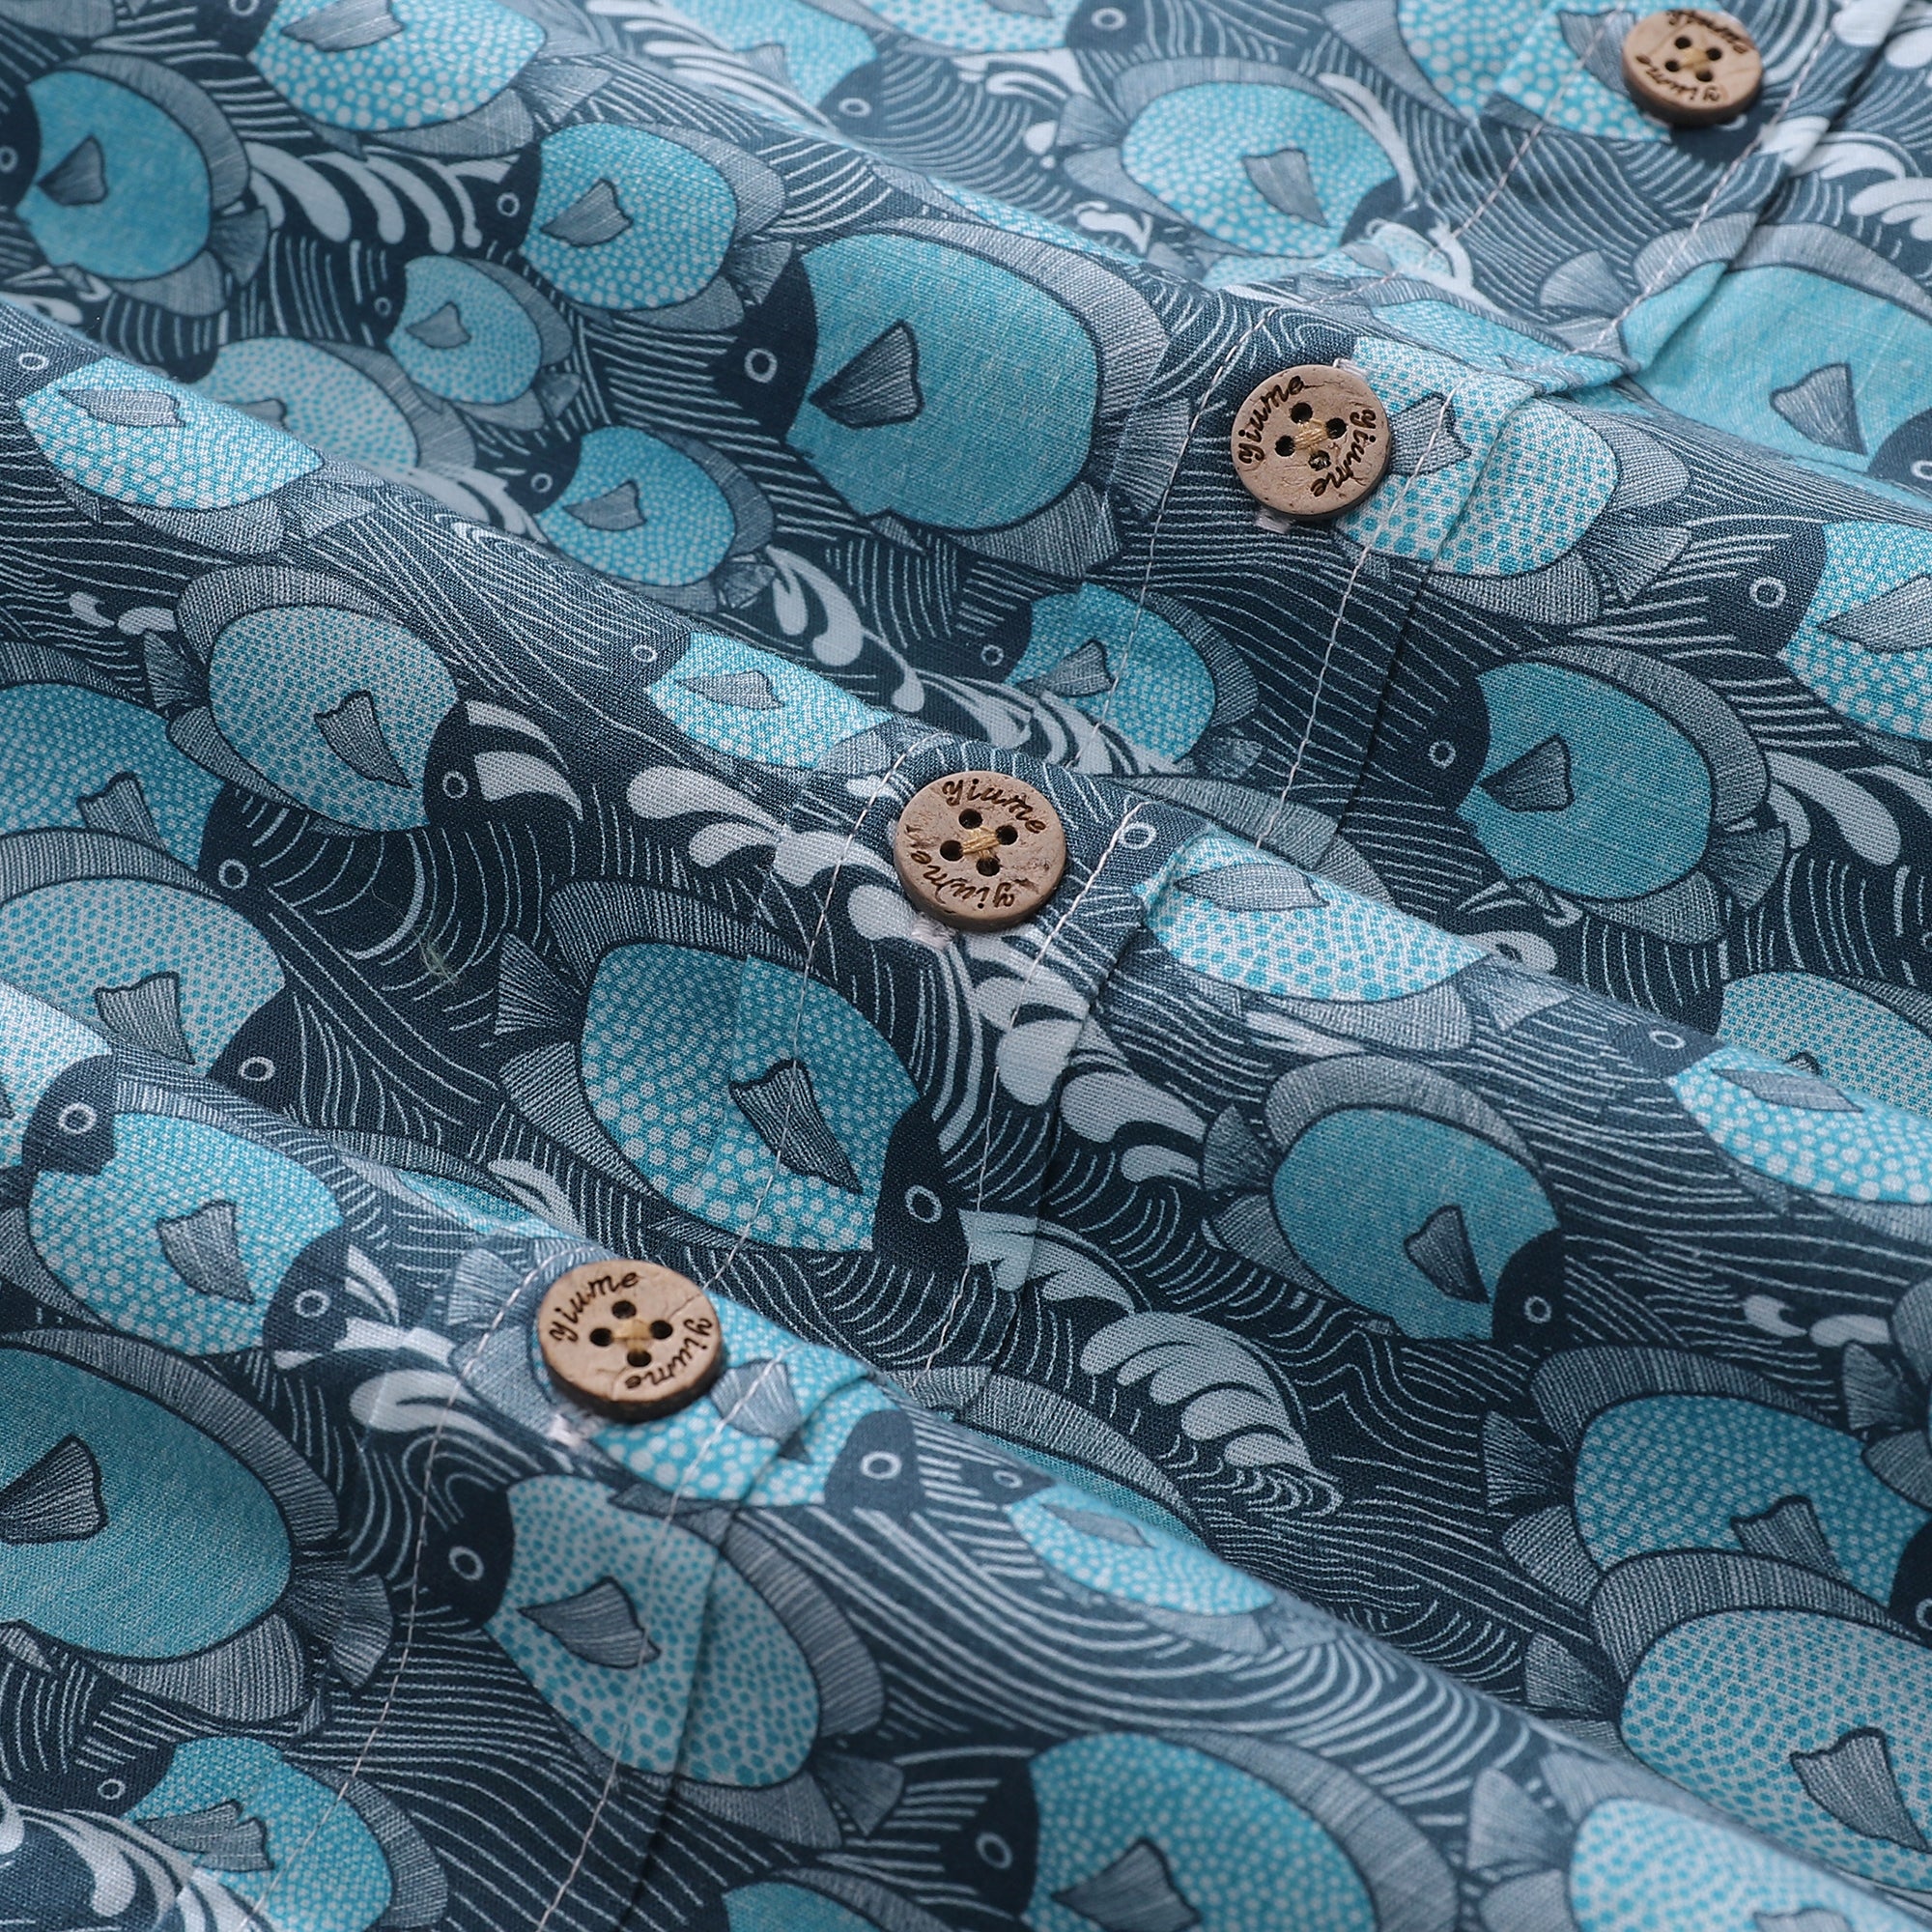 Herren-Hawaiihemd mit Dottyfish-Print, Baumwolle, kurzärmlig, Aloha-Hemd mit Knopfleiste